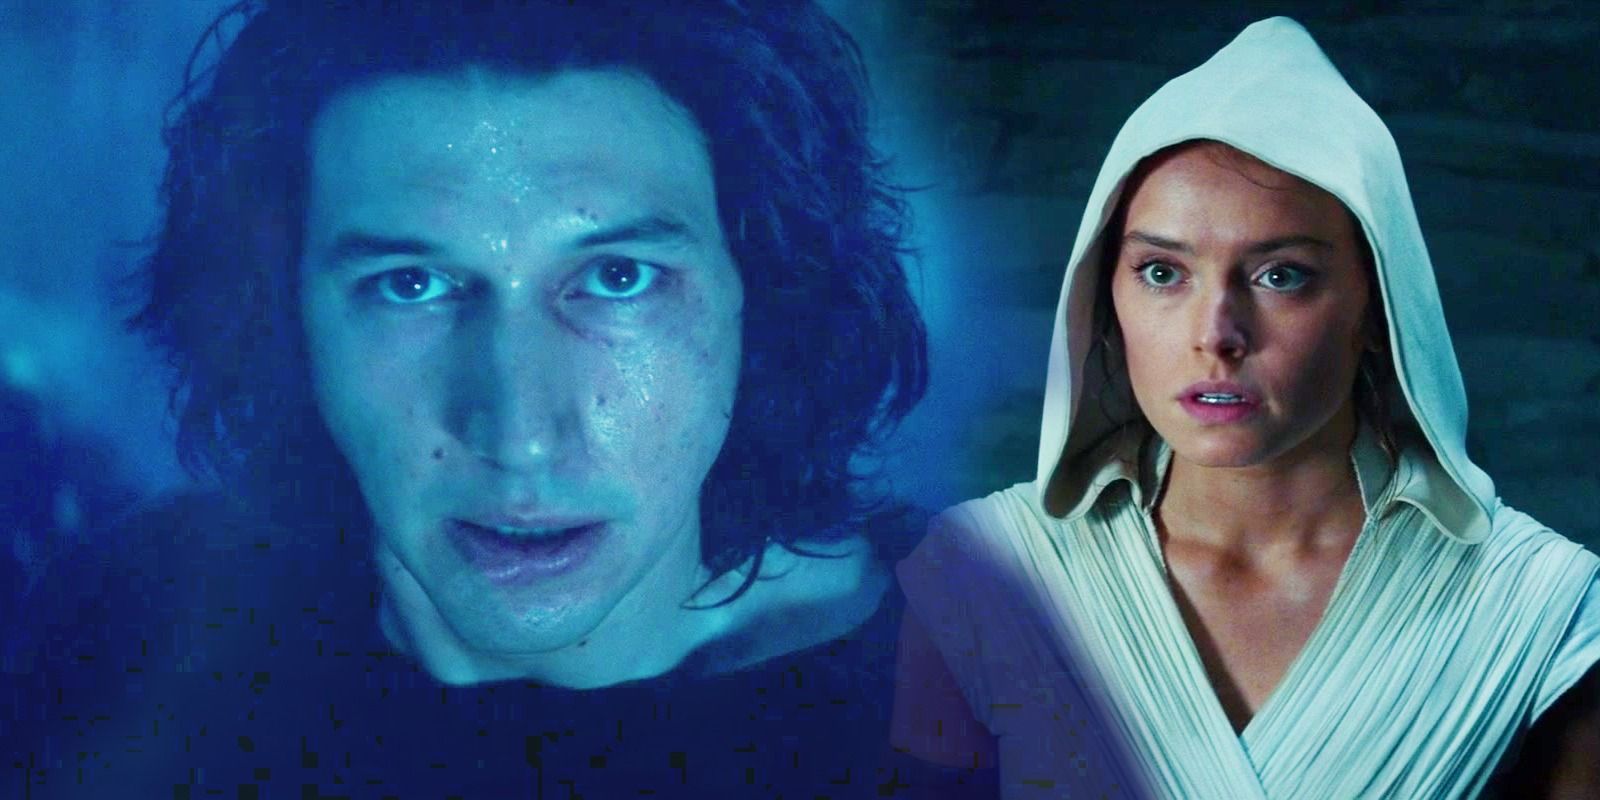 Rey à direita de The Rise of Skywalker parecendo surpreso e Kylo Ren em um tom azul semelhante a um fantasma da Força à esquerda